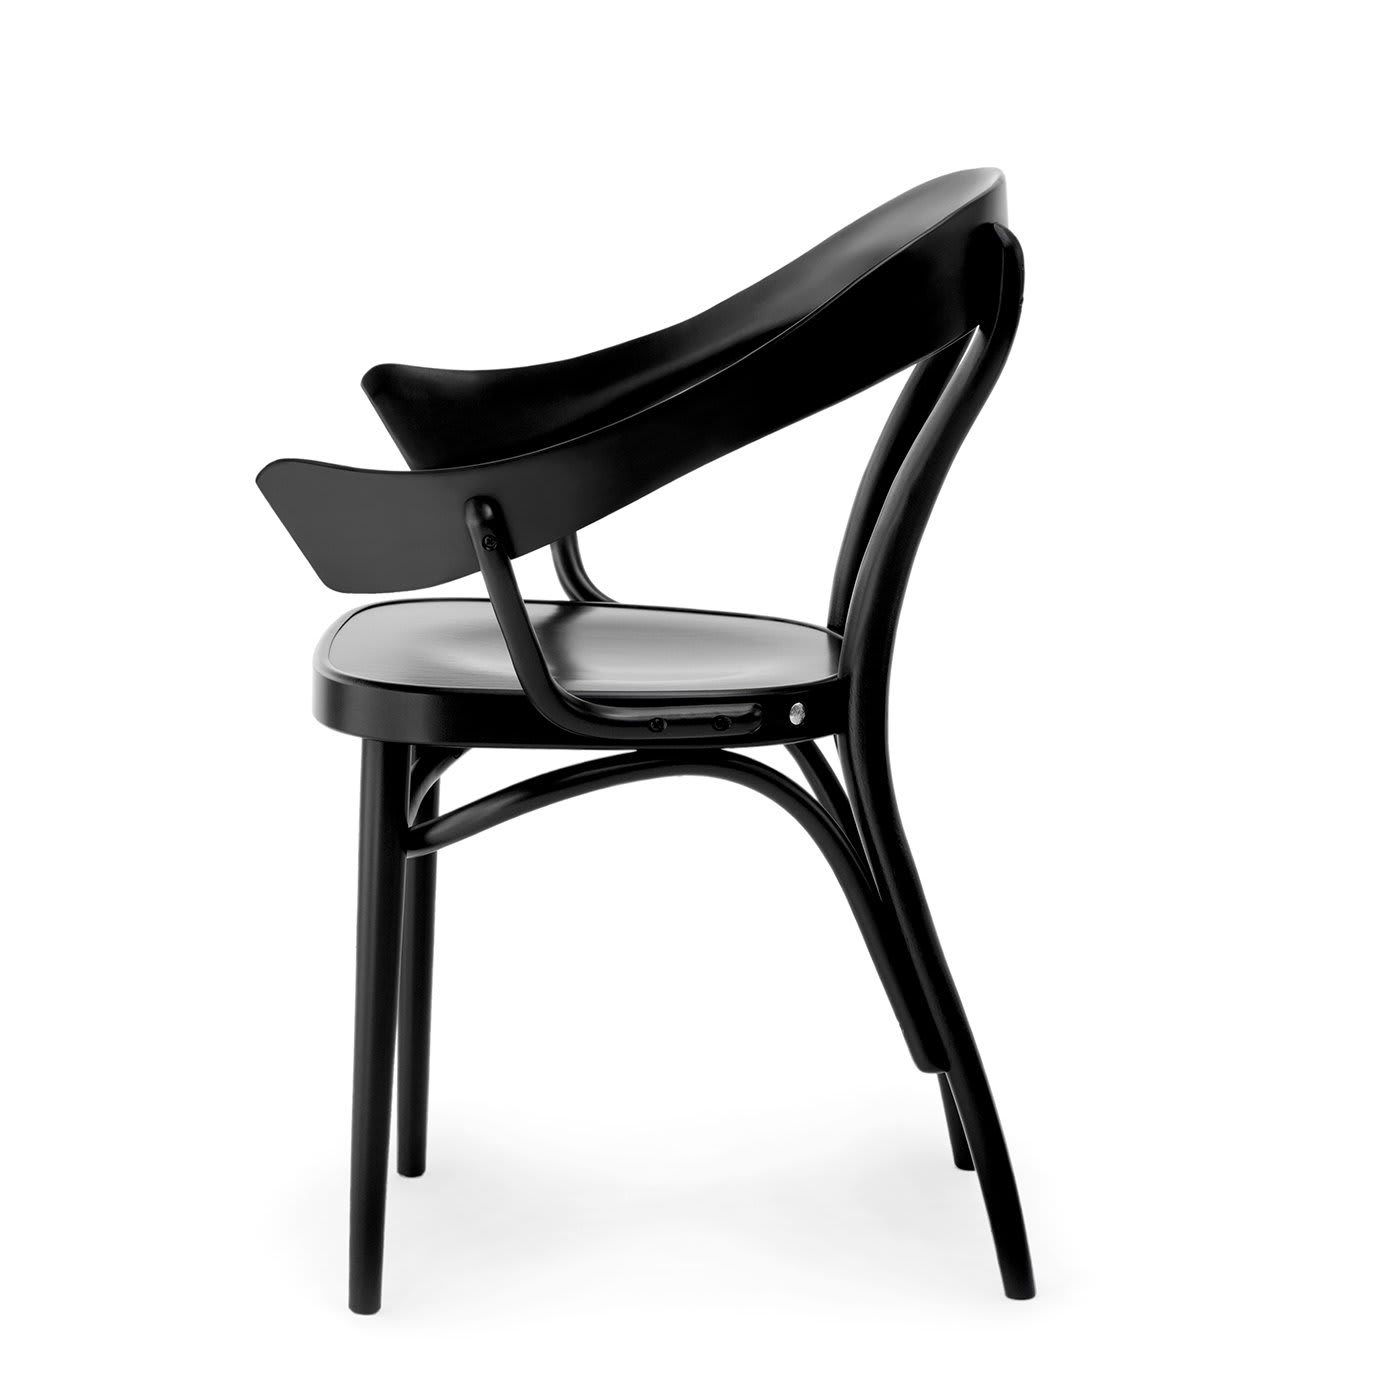 Bistrostuhl Chair by Nigel Coates - Gebrüder Thonet Vienna GmbH (GTV) – Wiener GTV Design